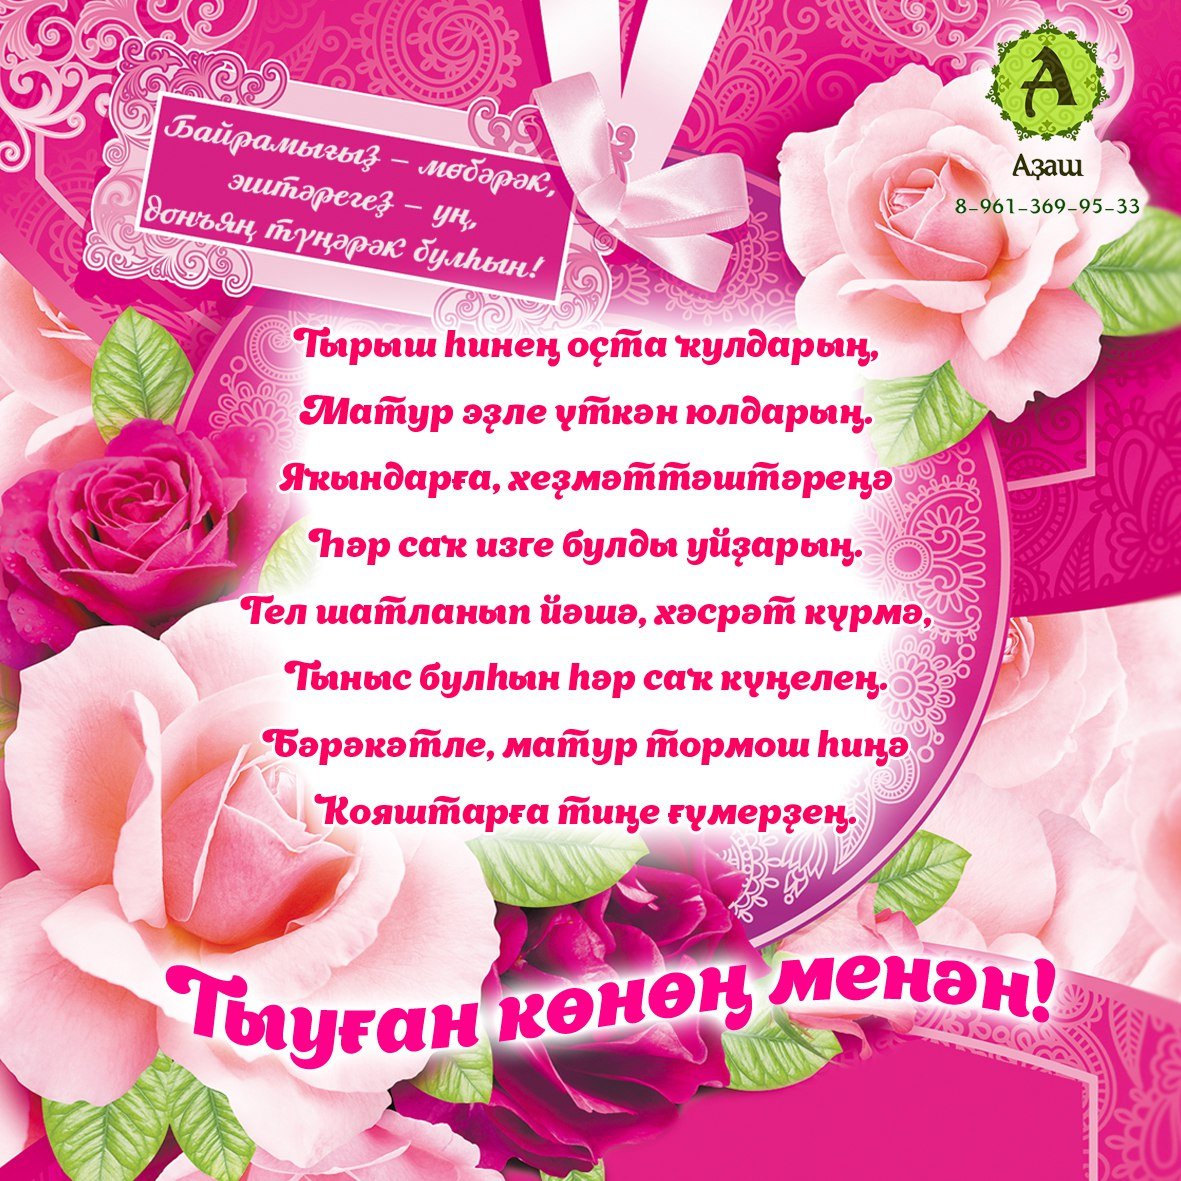 Поздравление сестре на башкирском языке. Поздравления с днём рождения на башкирском. Поздравление с юбилеем на башкирском. Поздравления с днём рождения на башкирском языке. Поздравления с днём рождения маме на башкирском языке.